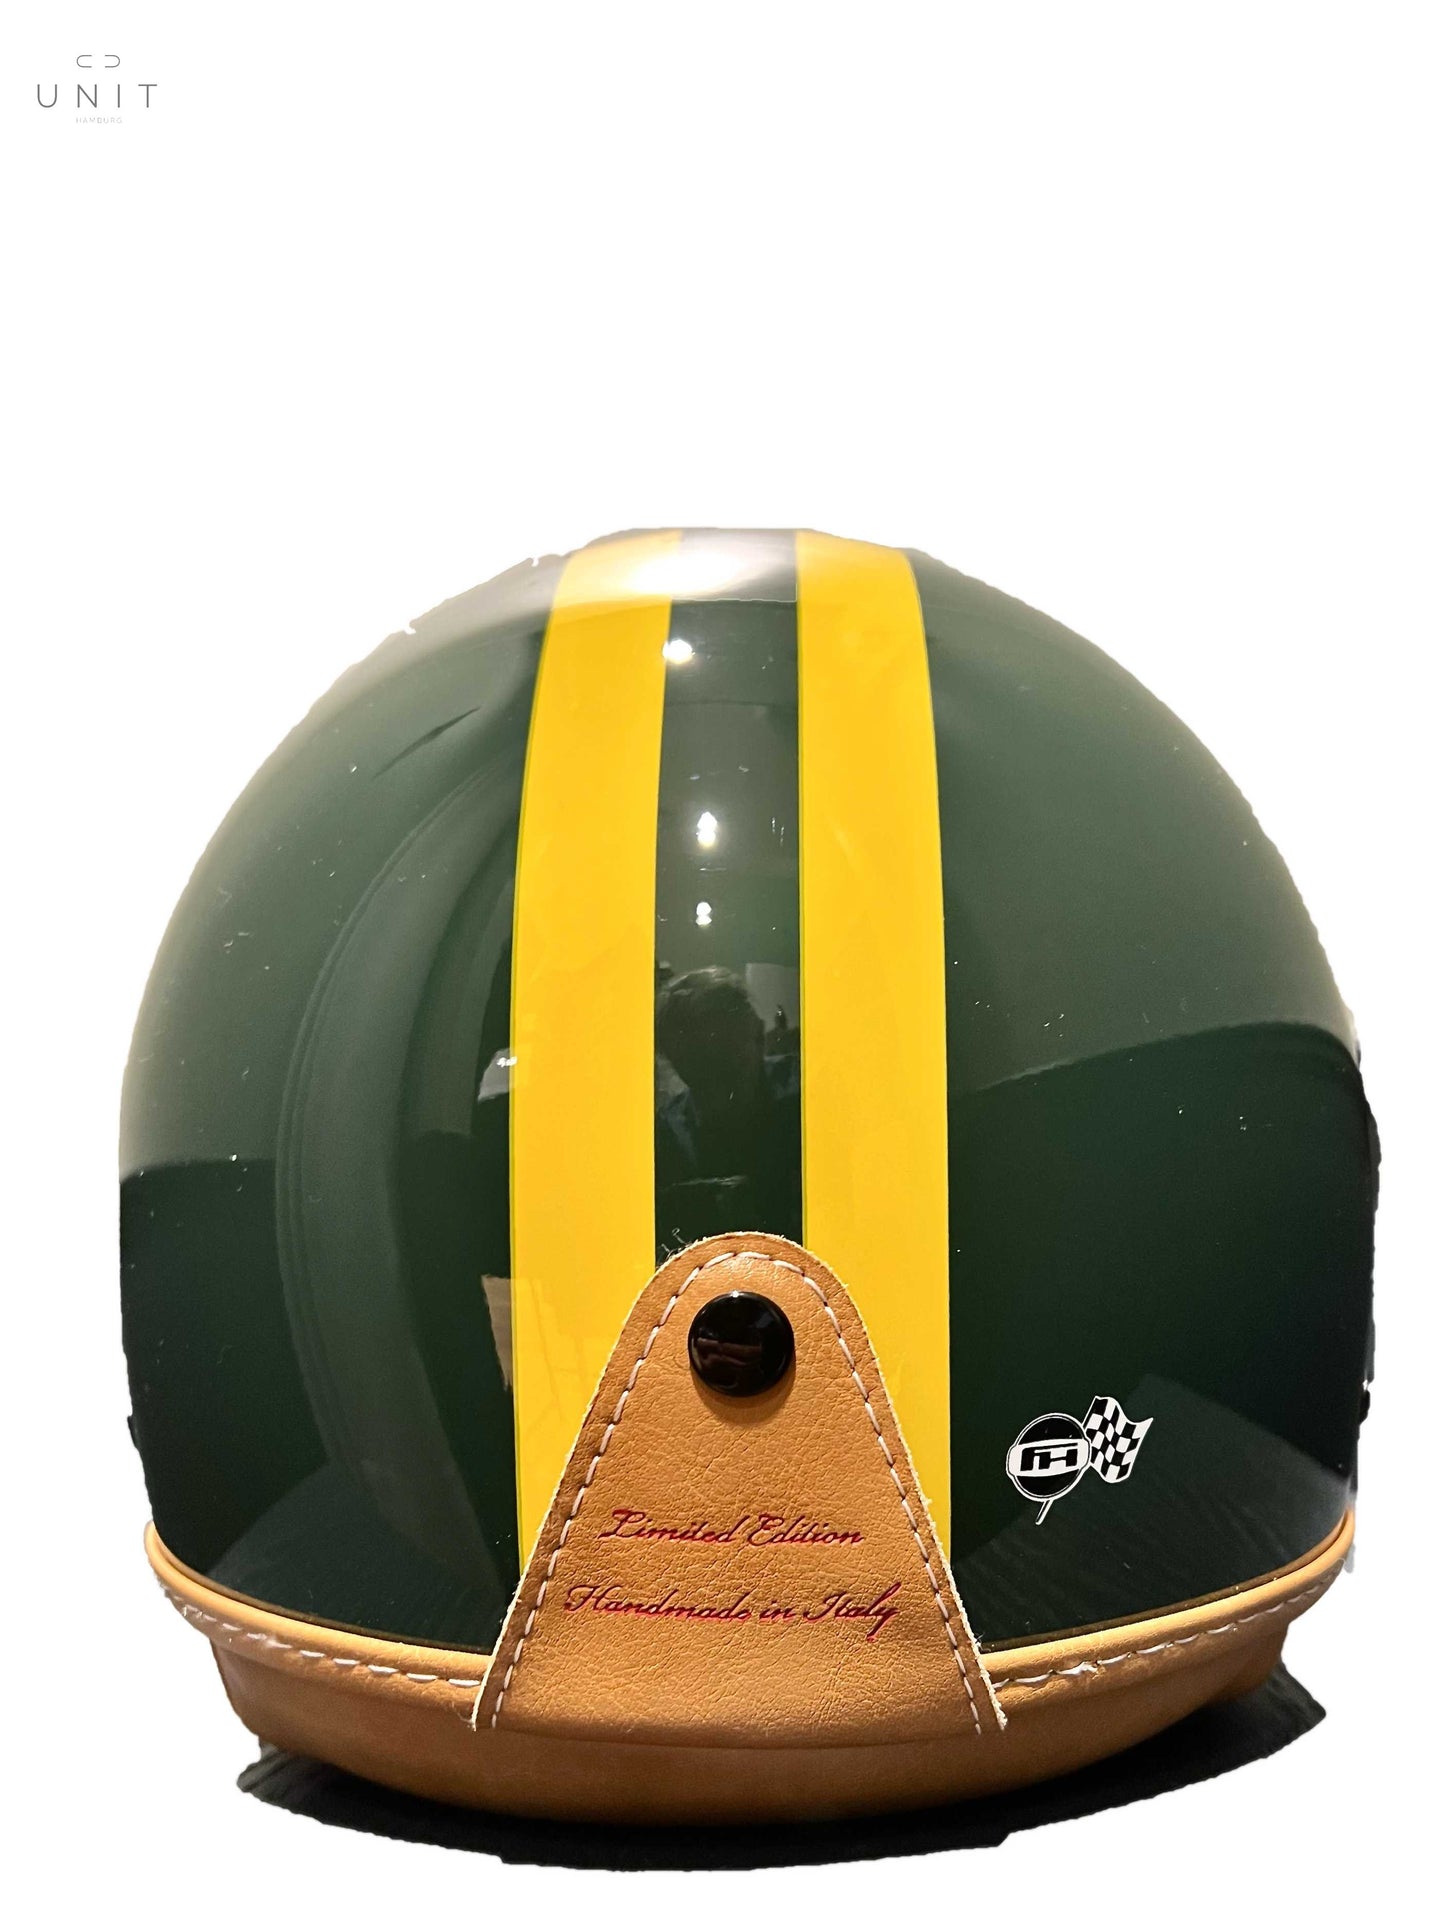 von hinten betrachtet: GULF Number 8 visor, british green